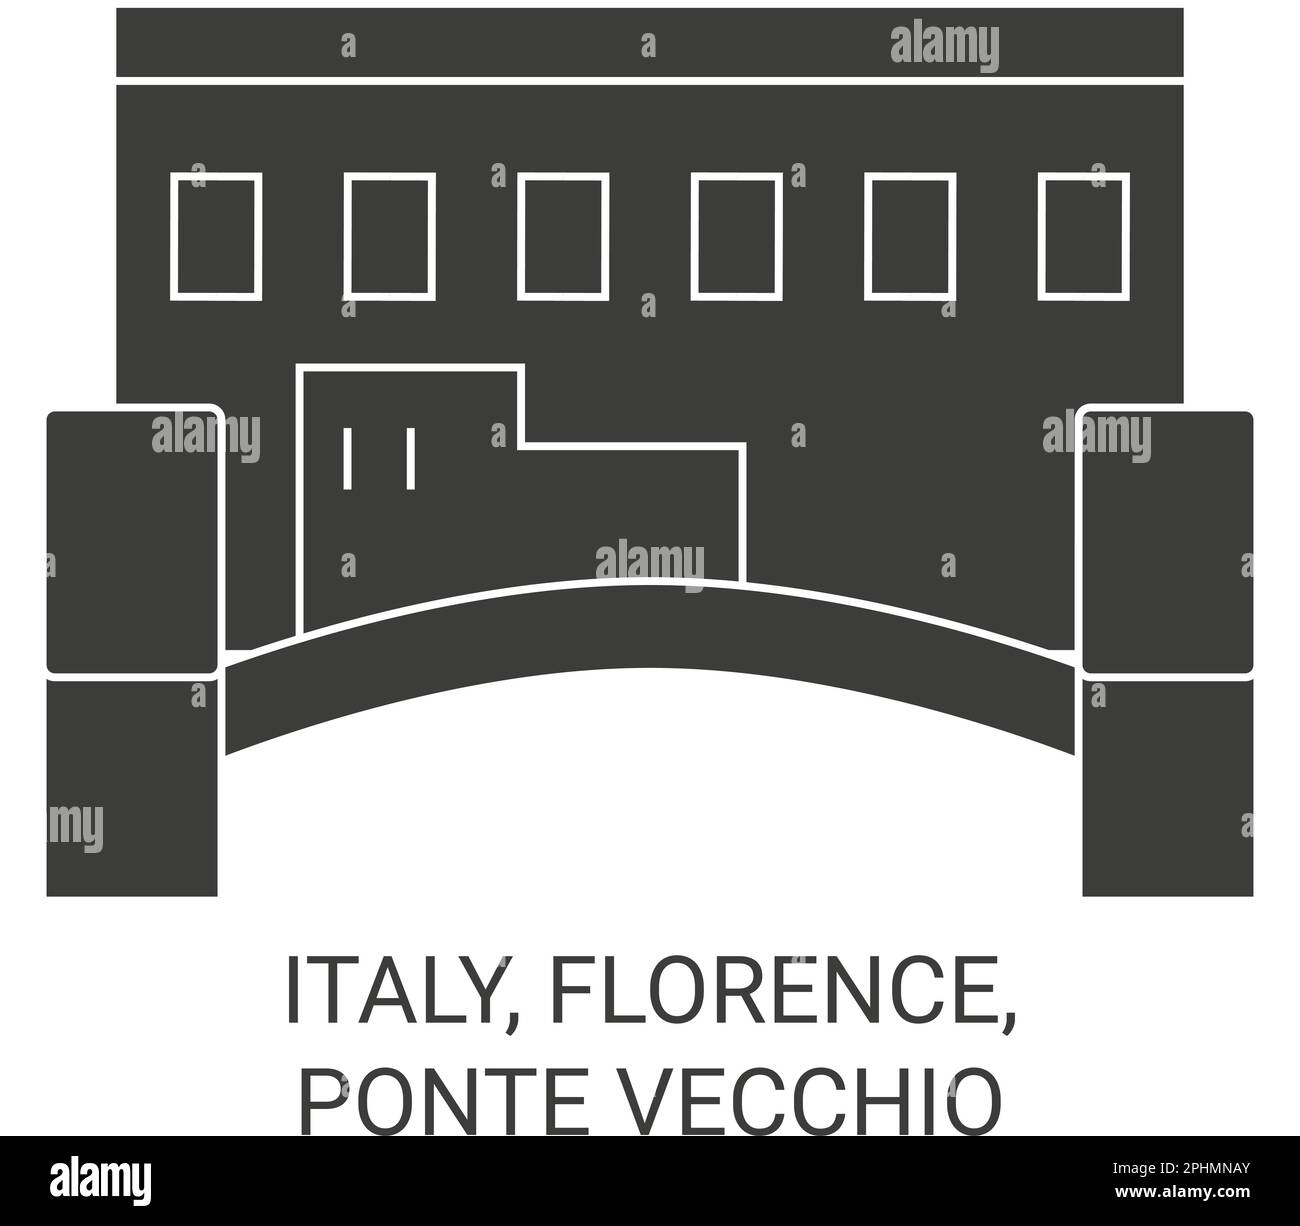 Italien, Florenz, Ponte Vecchio Reise-Wahrzeichen-Vektordarstellung Stock Vektor